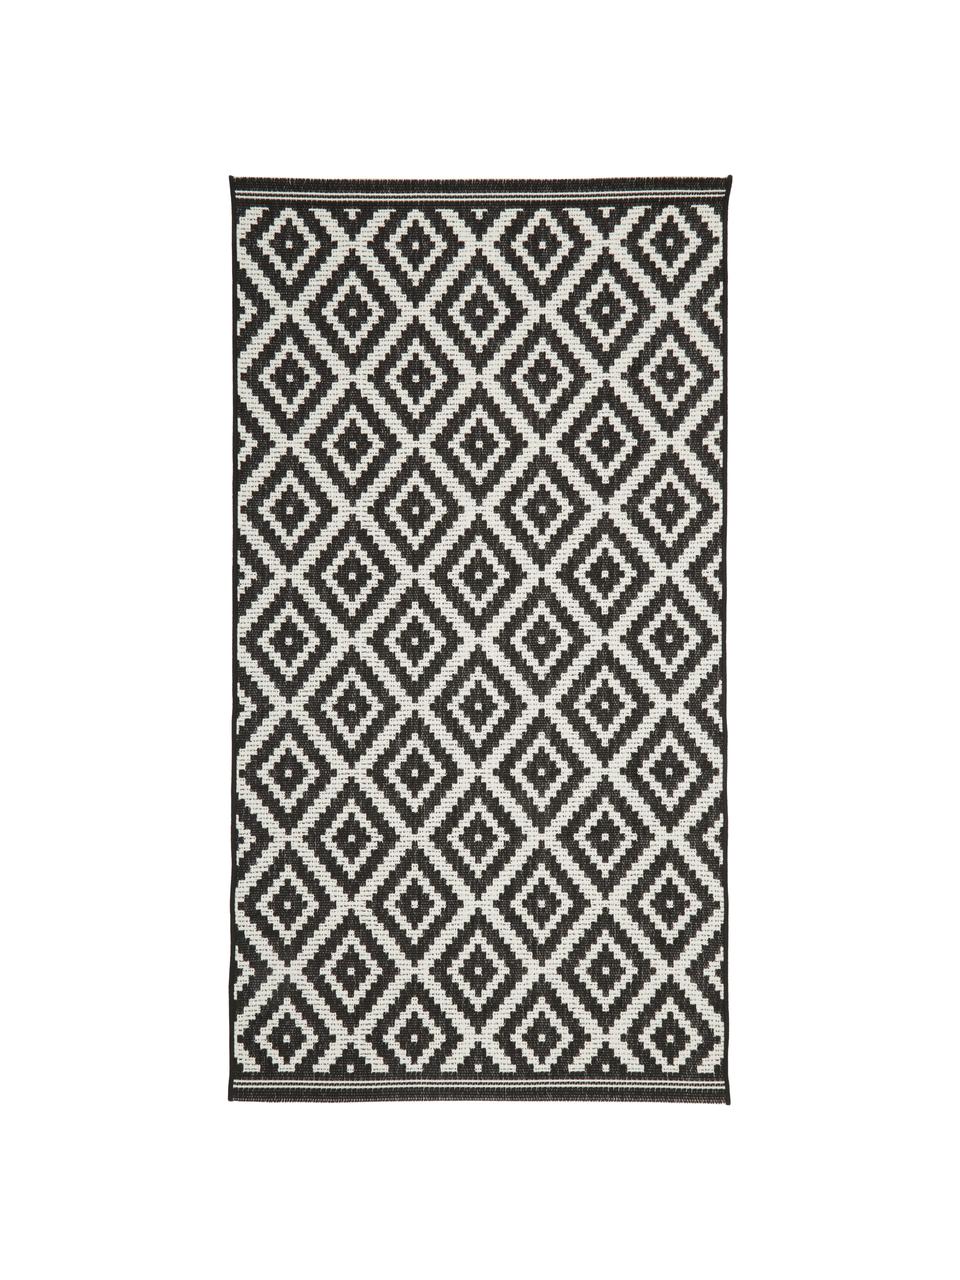 Vzorovaný interiérový/exteriérový koberec Miami, 70 % polypropylen, 30 % polyester, Bílá, černá, Š 200 cm, D 290 cm (velikost L)